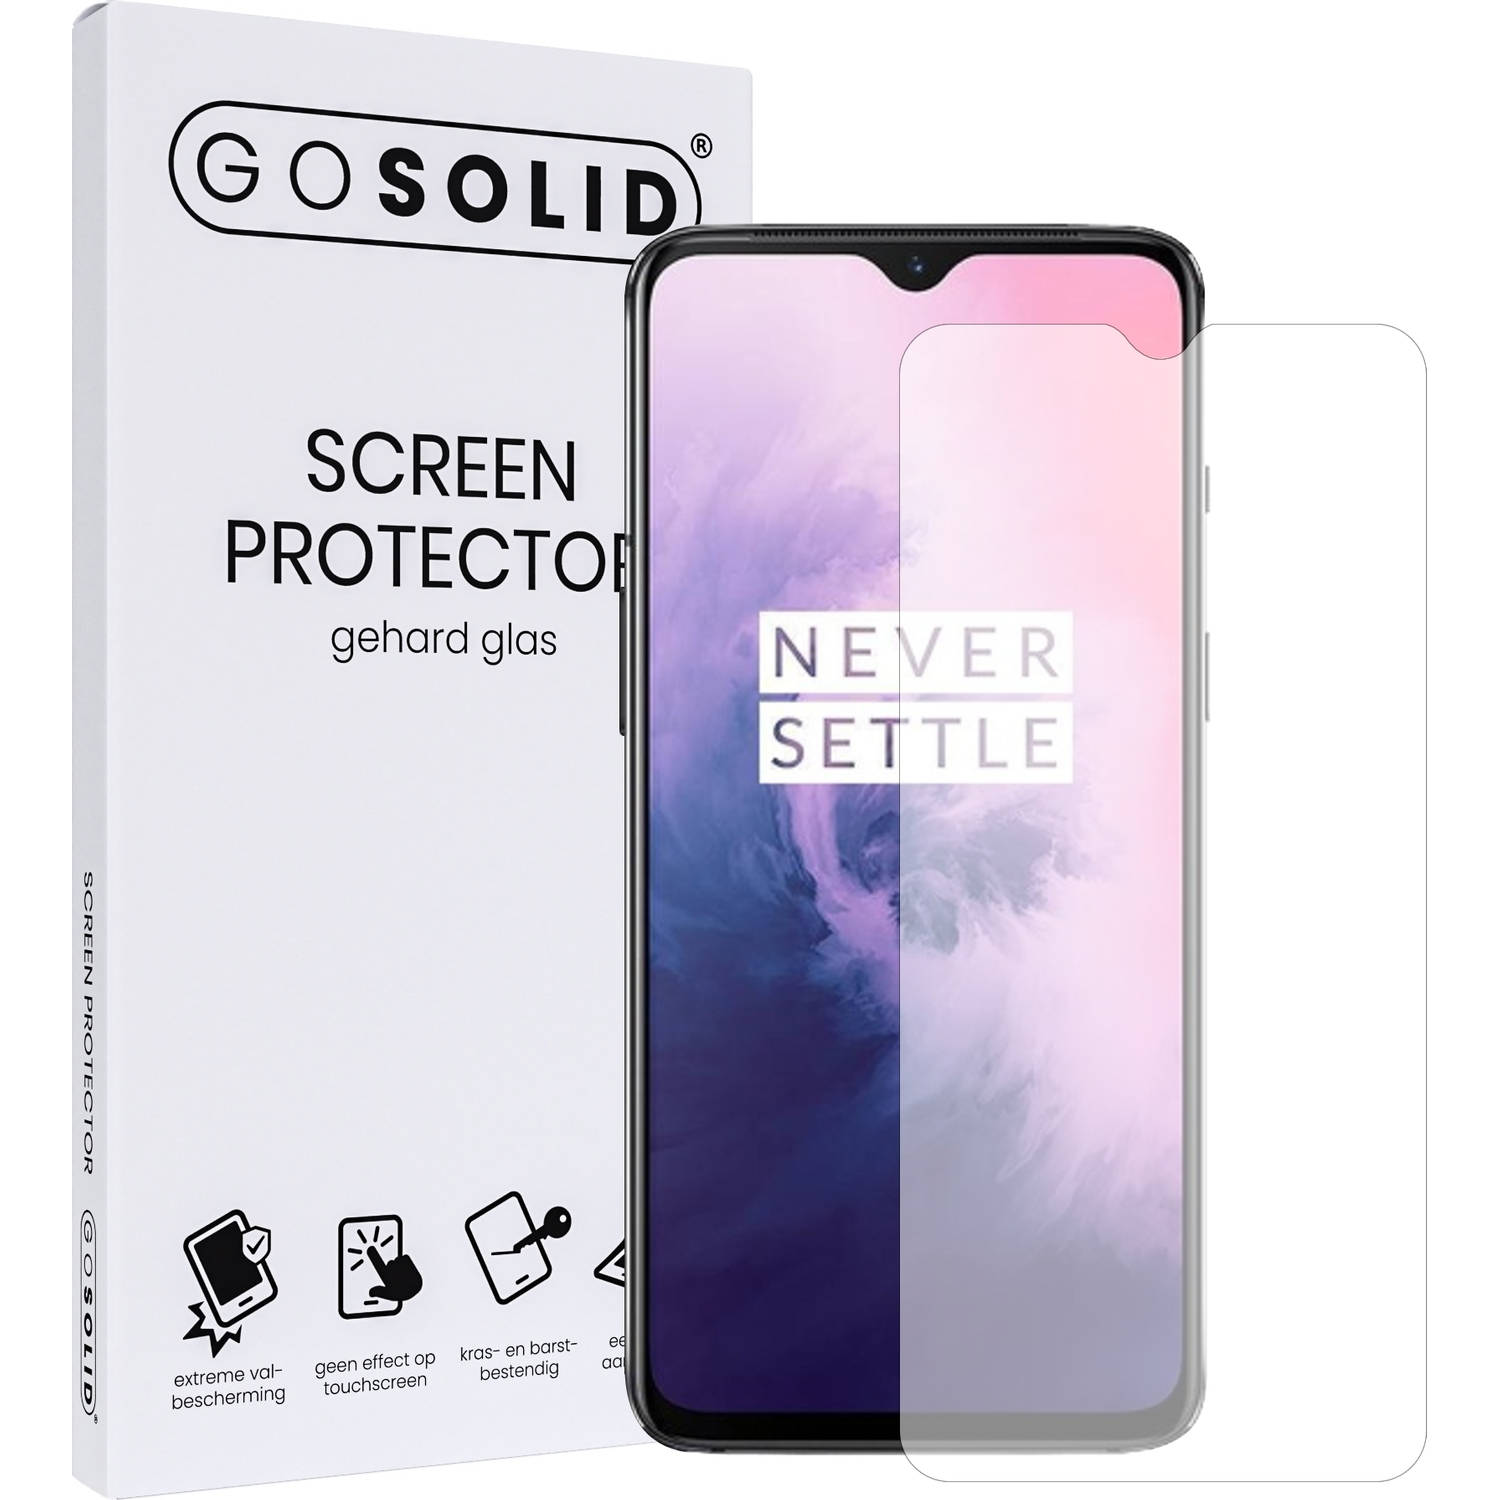 GO SOLID! Screenprotector voor Oneplus 7T gehard glas